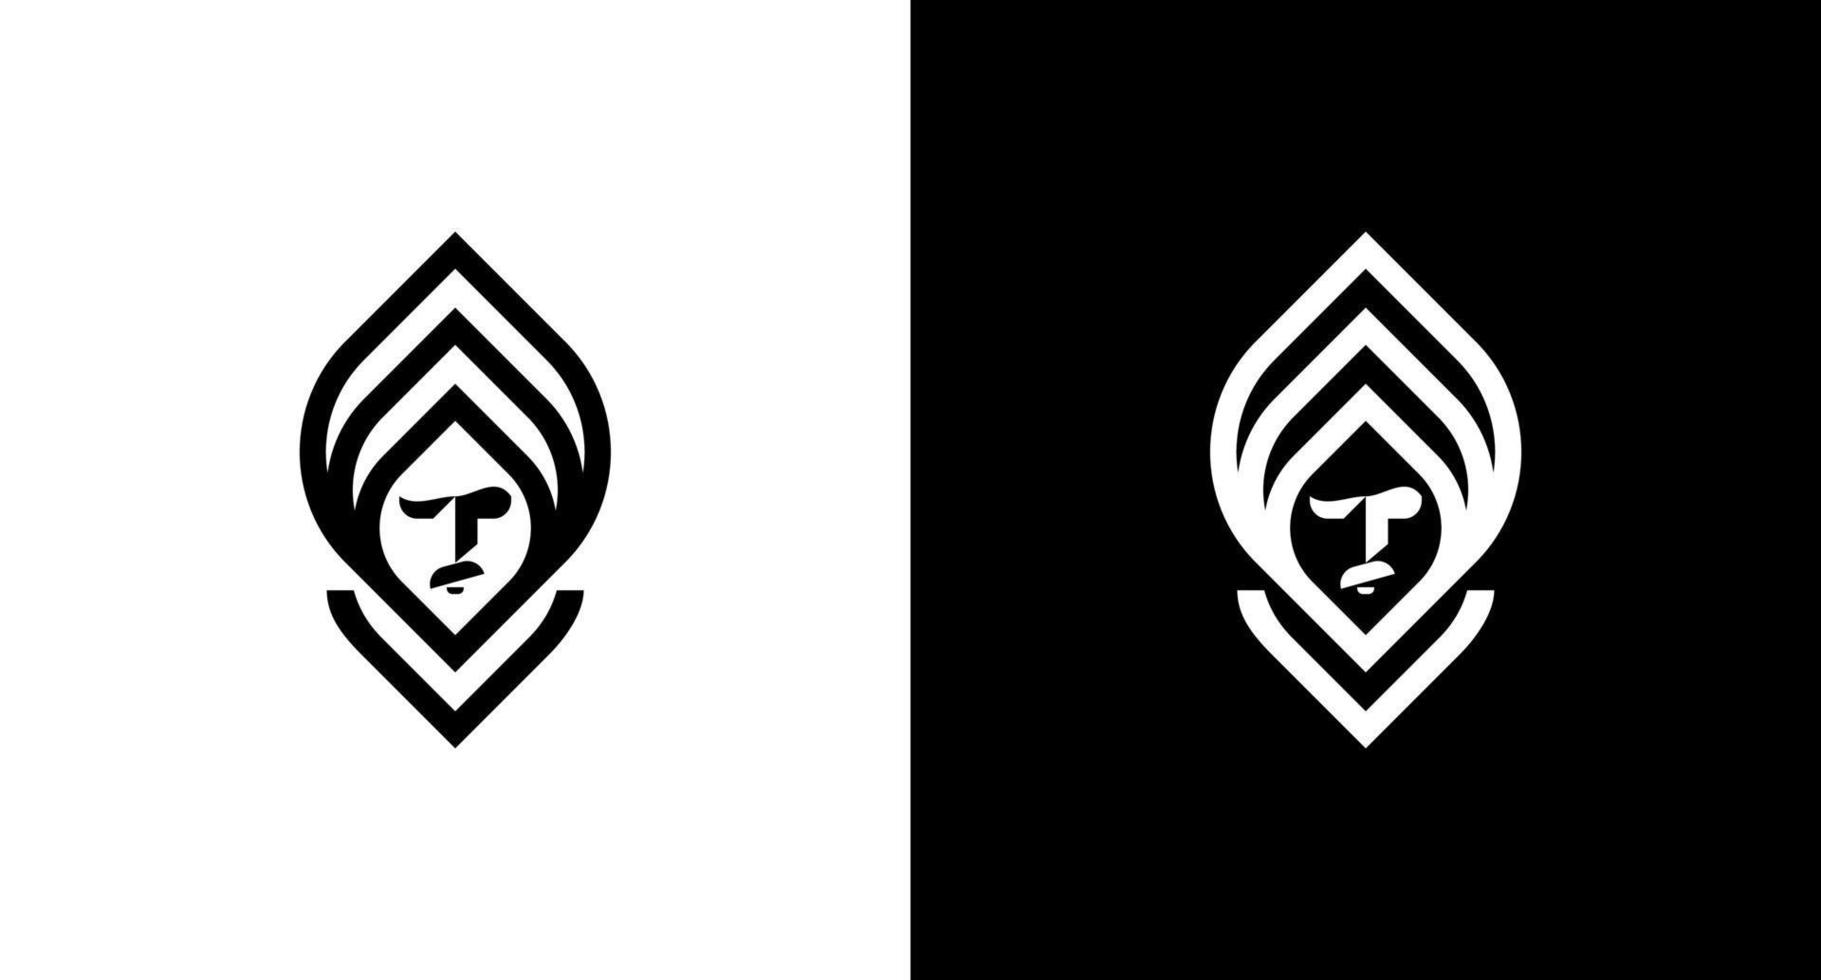 guru logotipo pessoa retrato monograma Preto e branco ícone ilustração vetor desenhos modelos